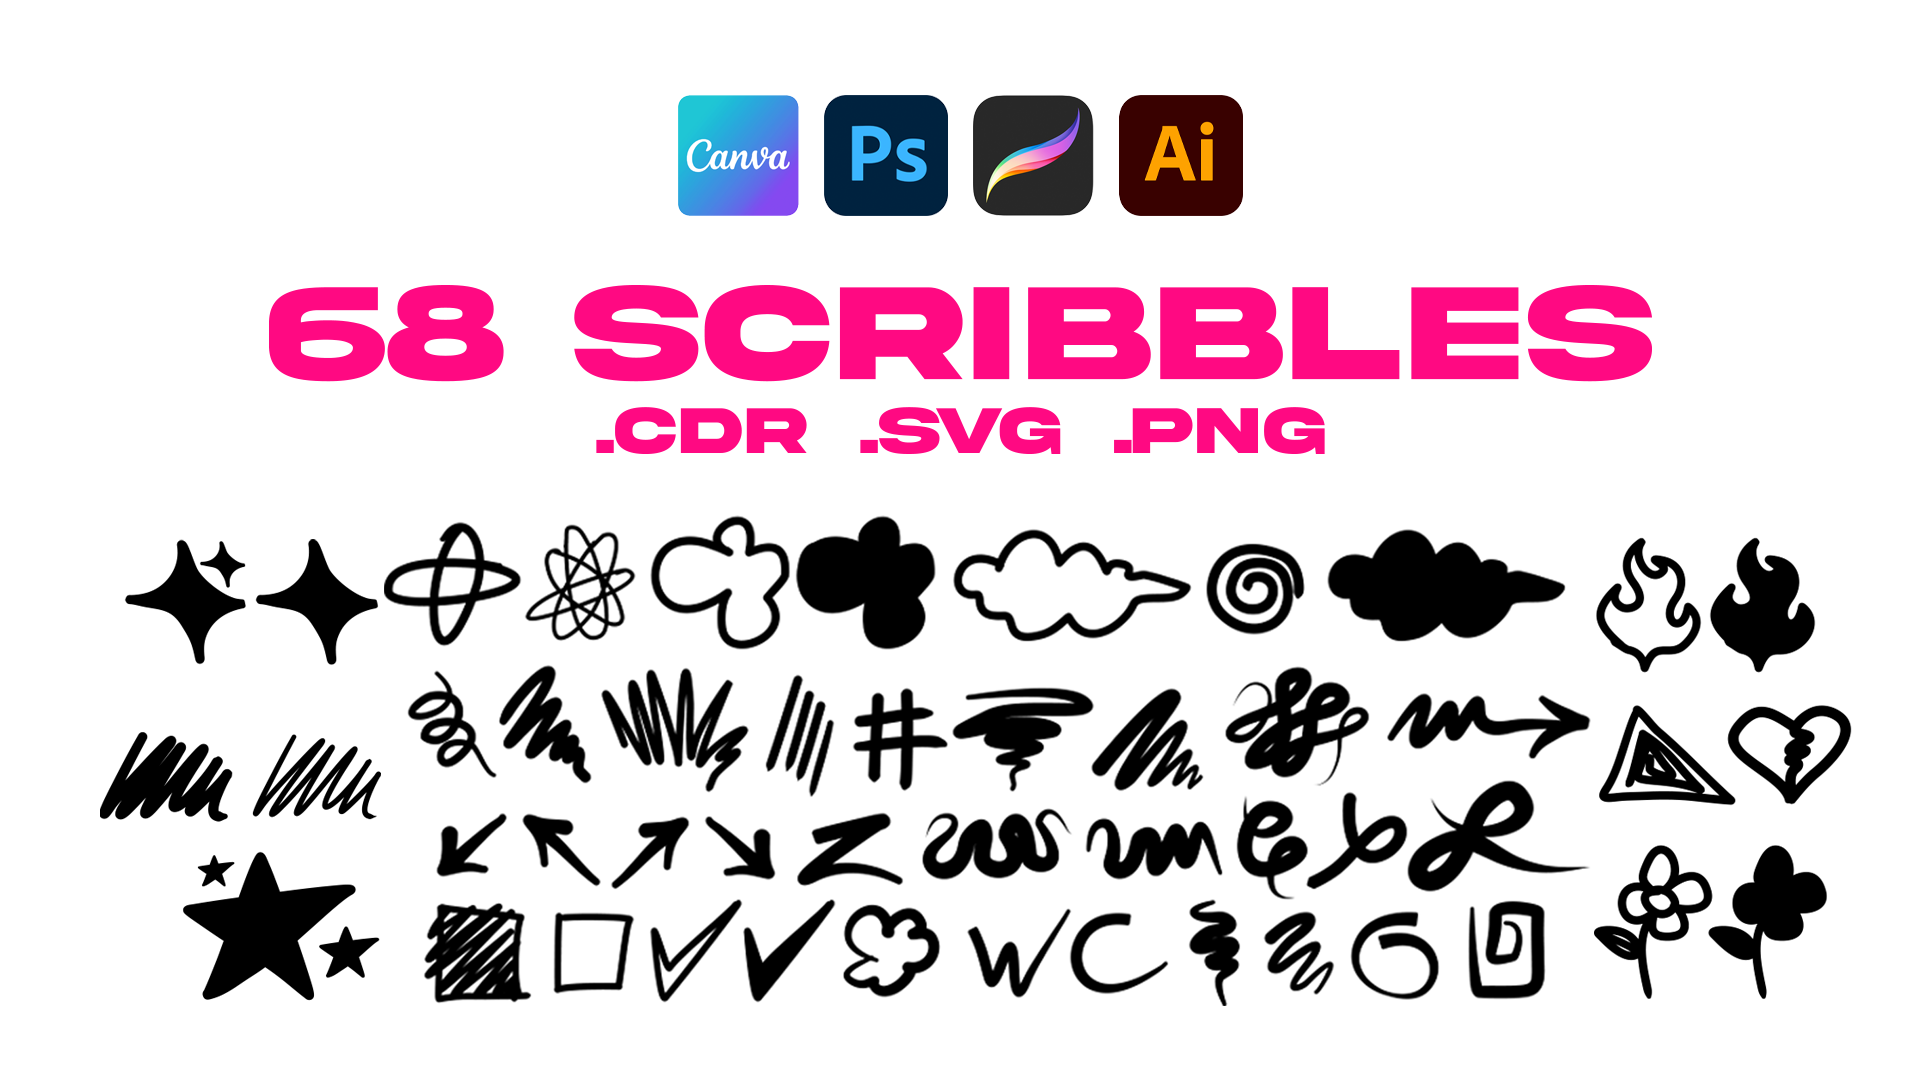 Scribbles & Doodles Vector Pack 1.0